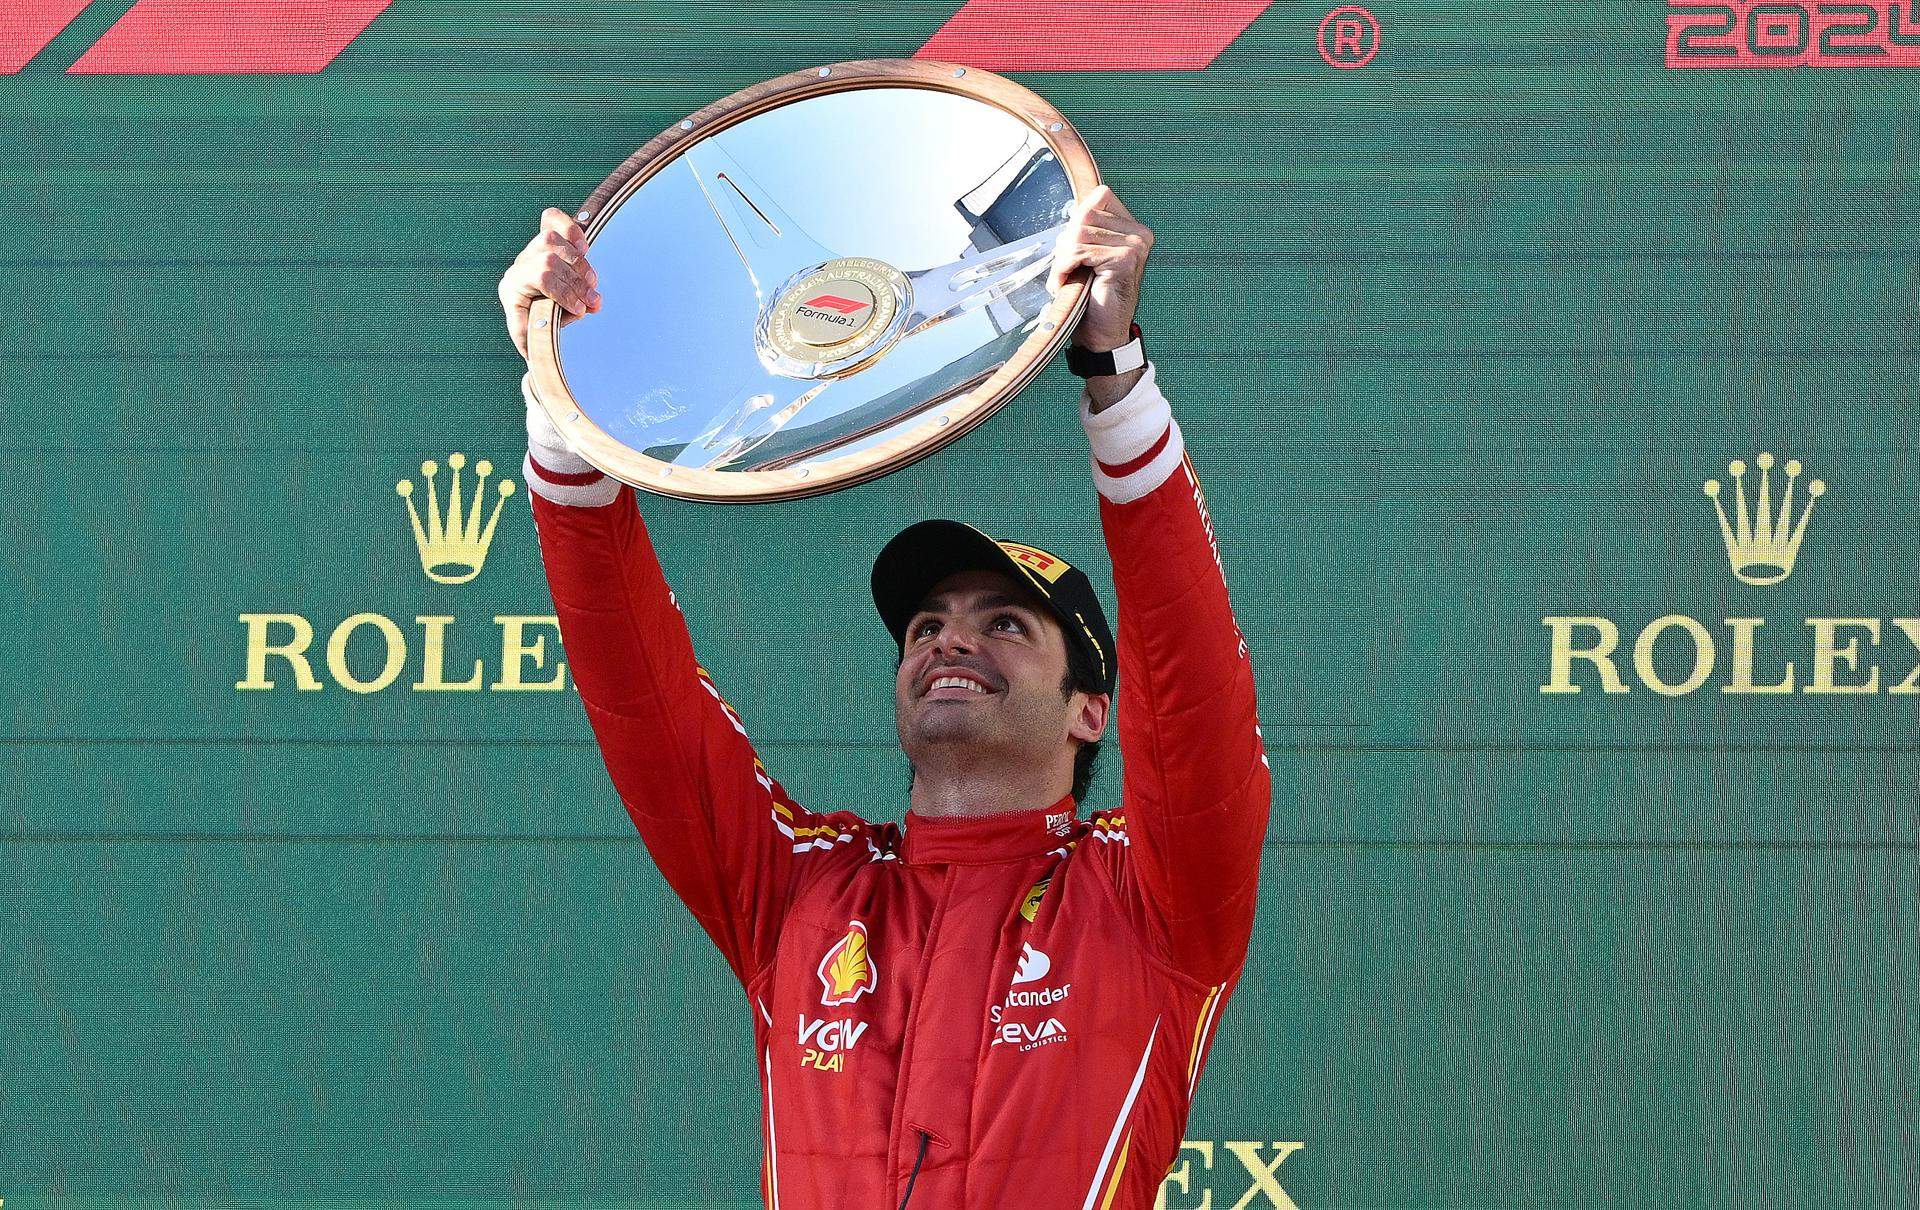 Carlos Sainz pot guanyar el Mundial de F1 del 2025 si es tanquen 2 fitxatges